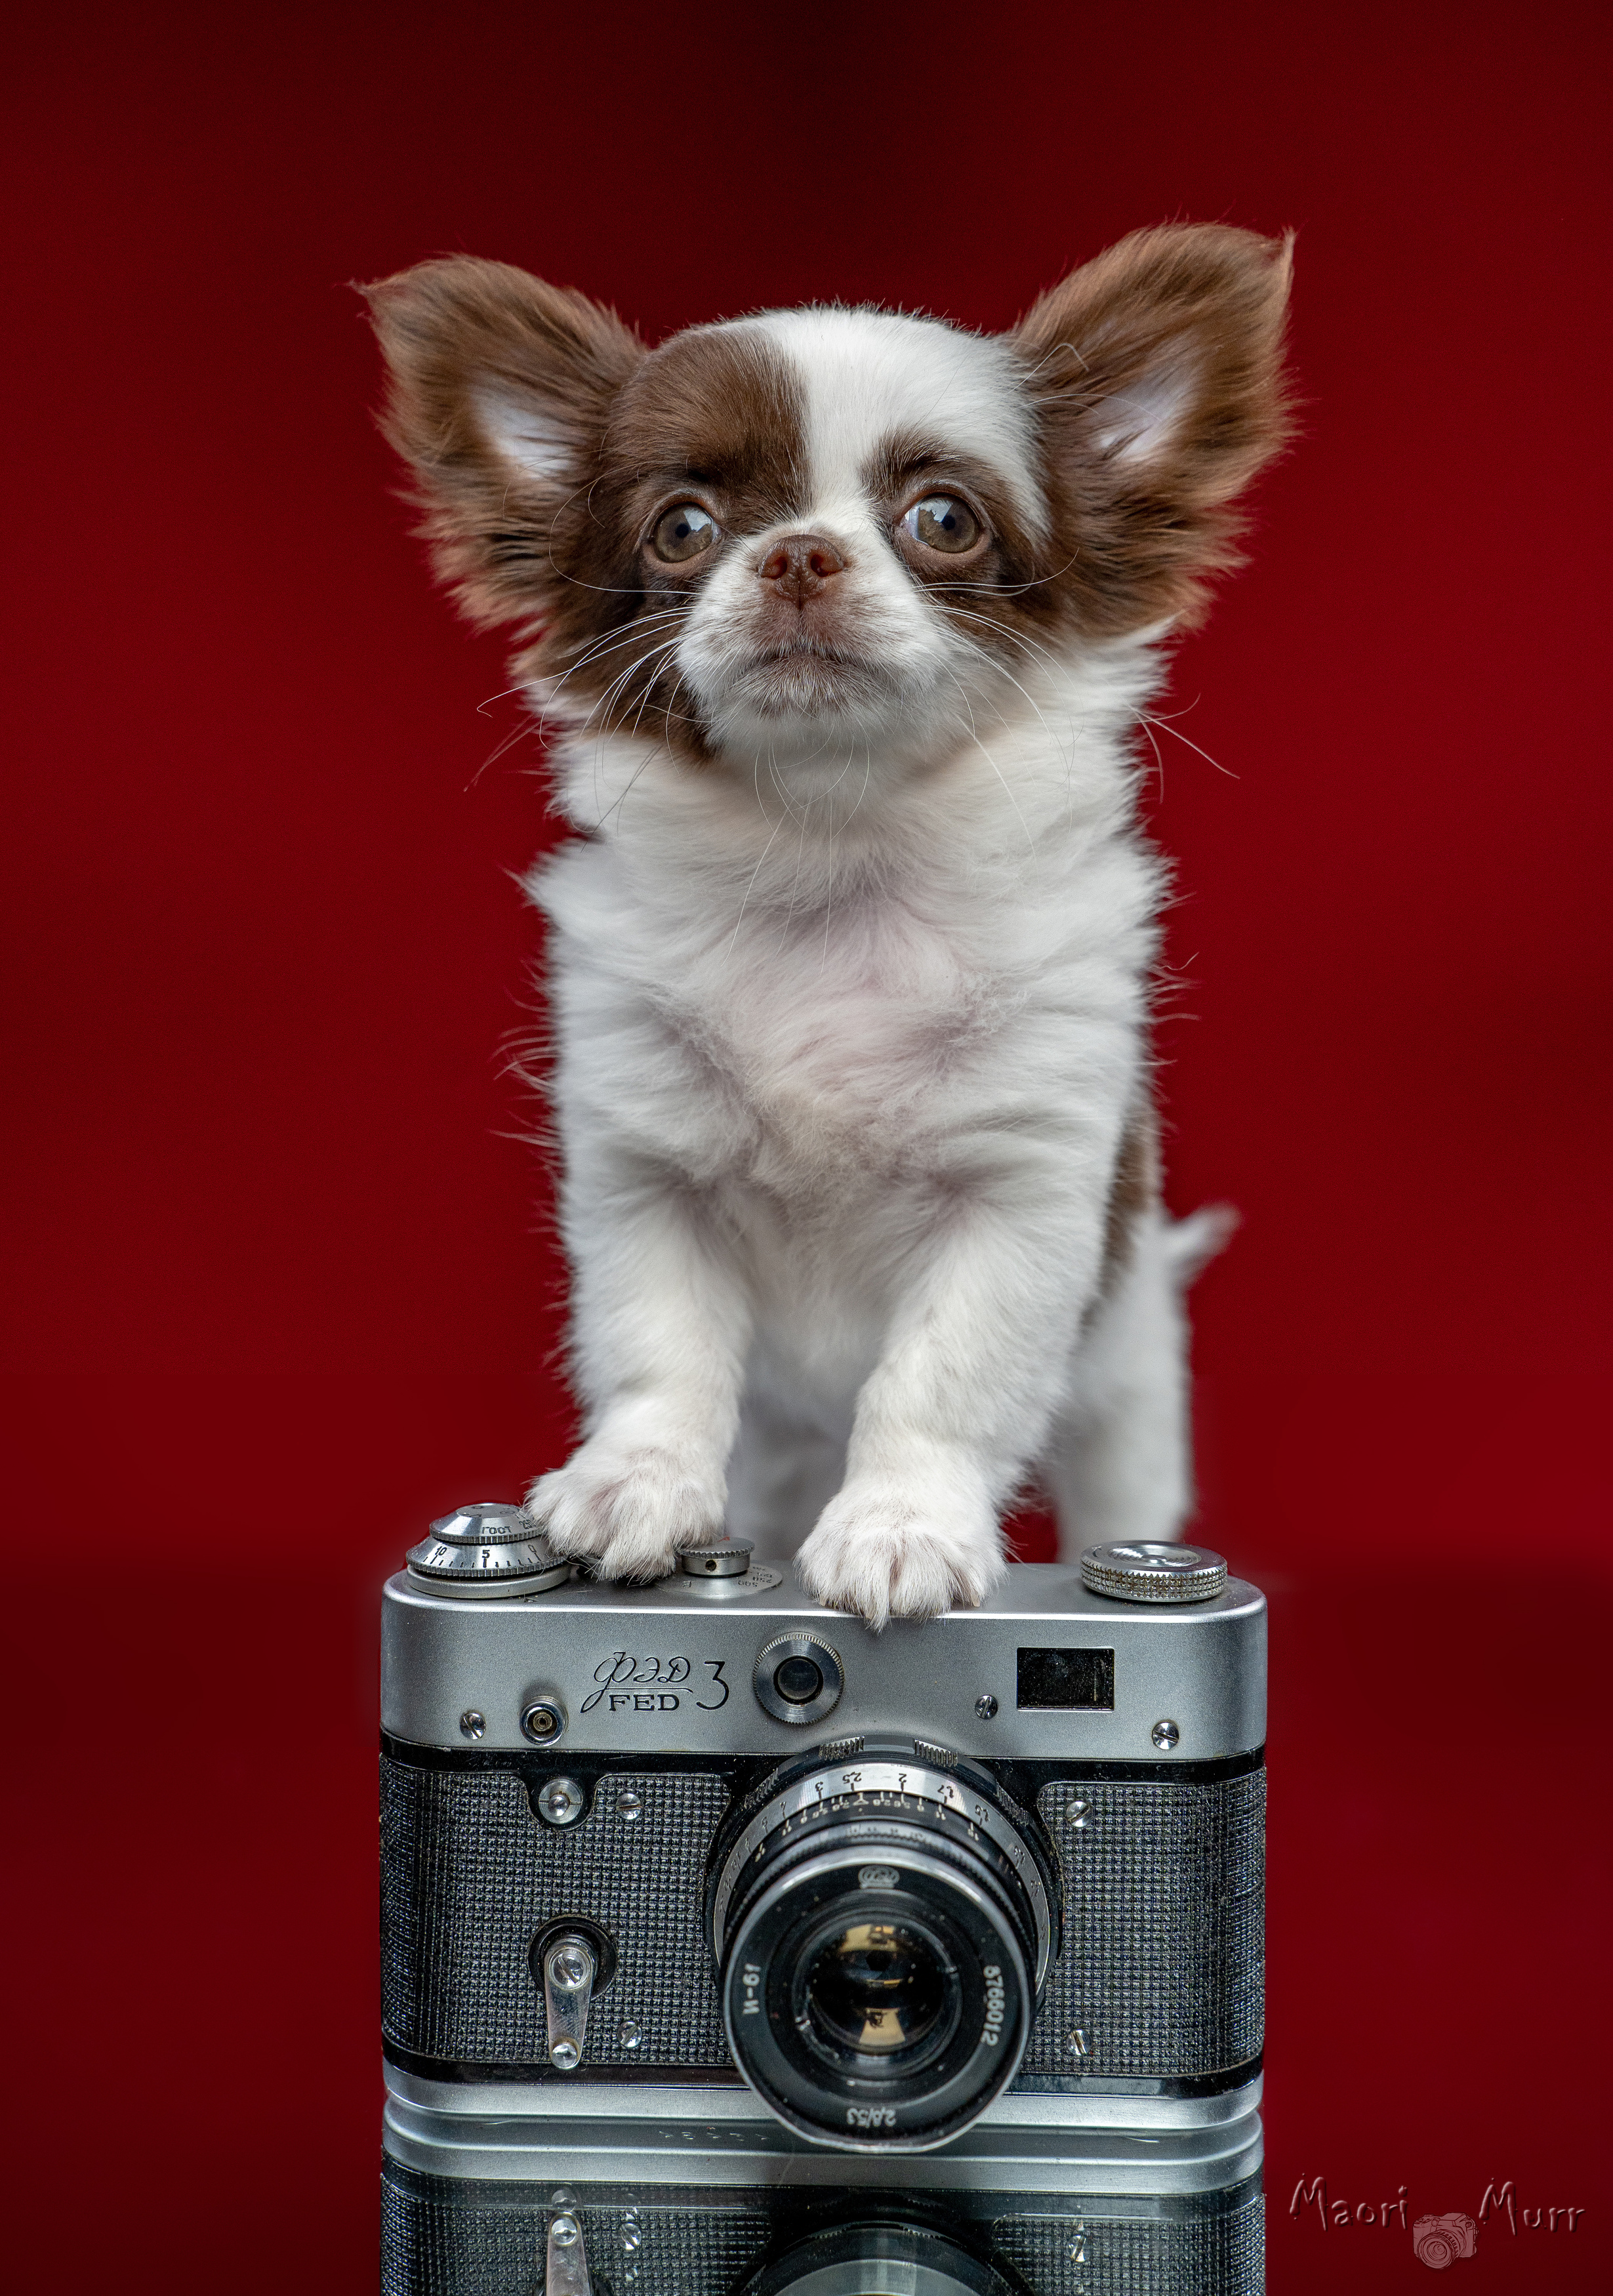 чихуахуа, собака, маленькая собака, собака и фотоаппарат, фед 3, Маори Мурр